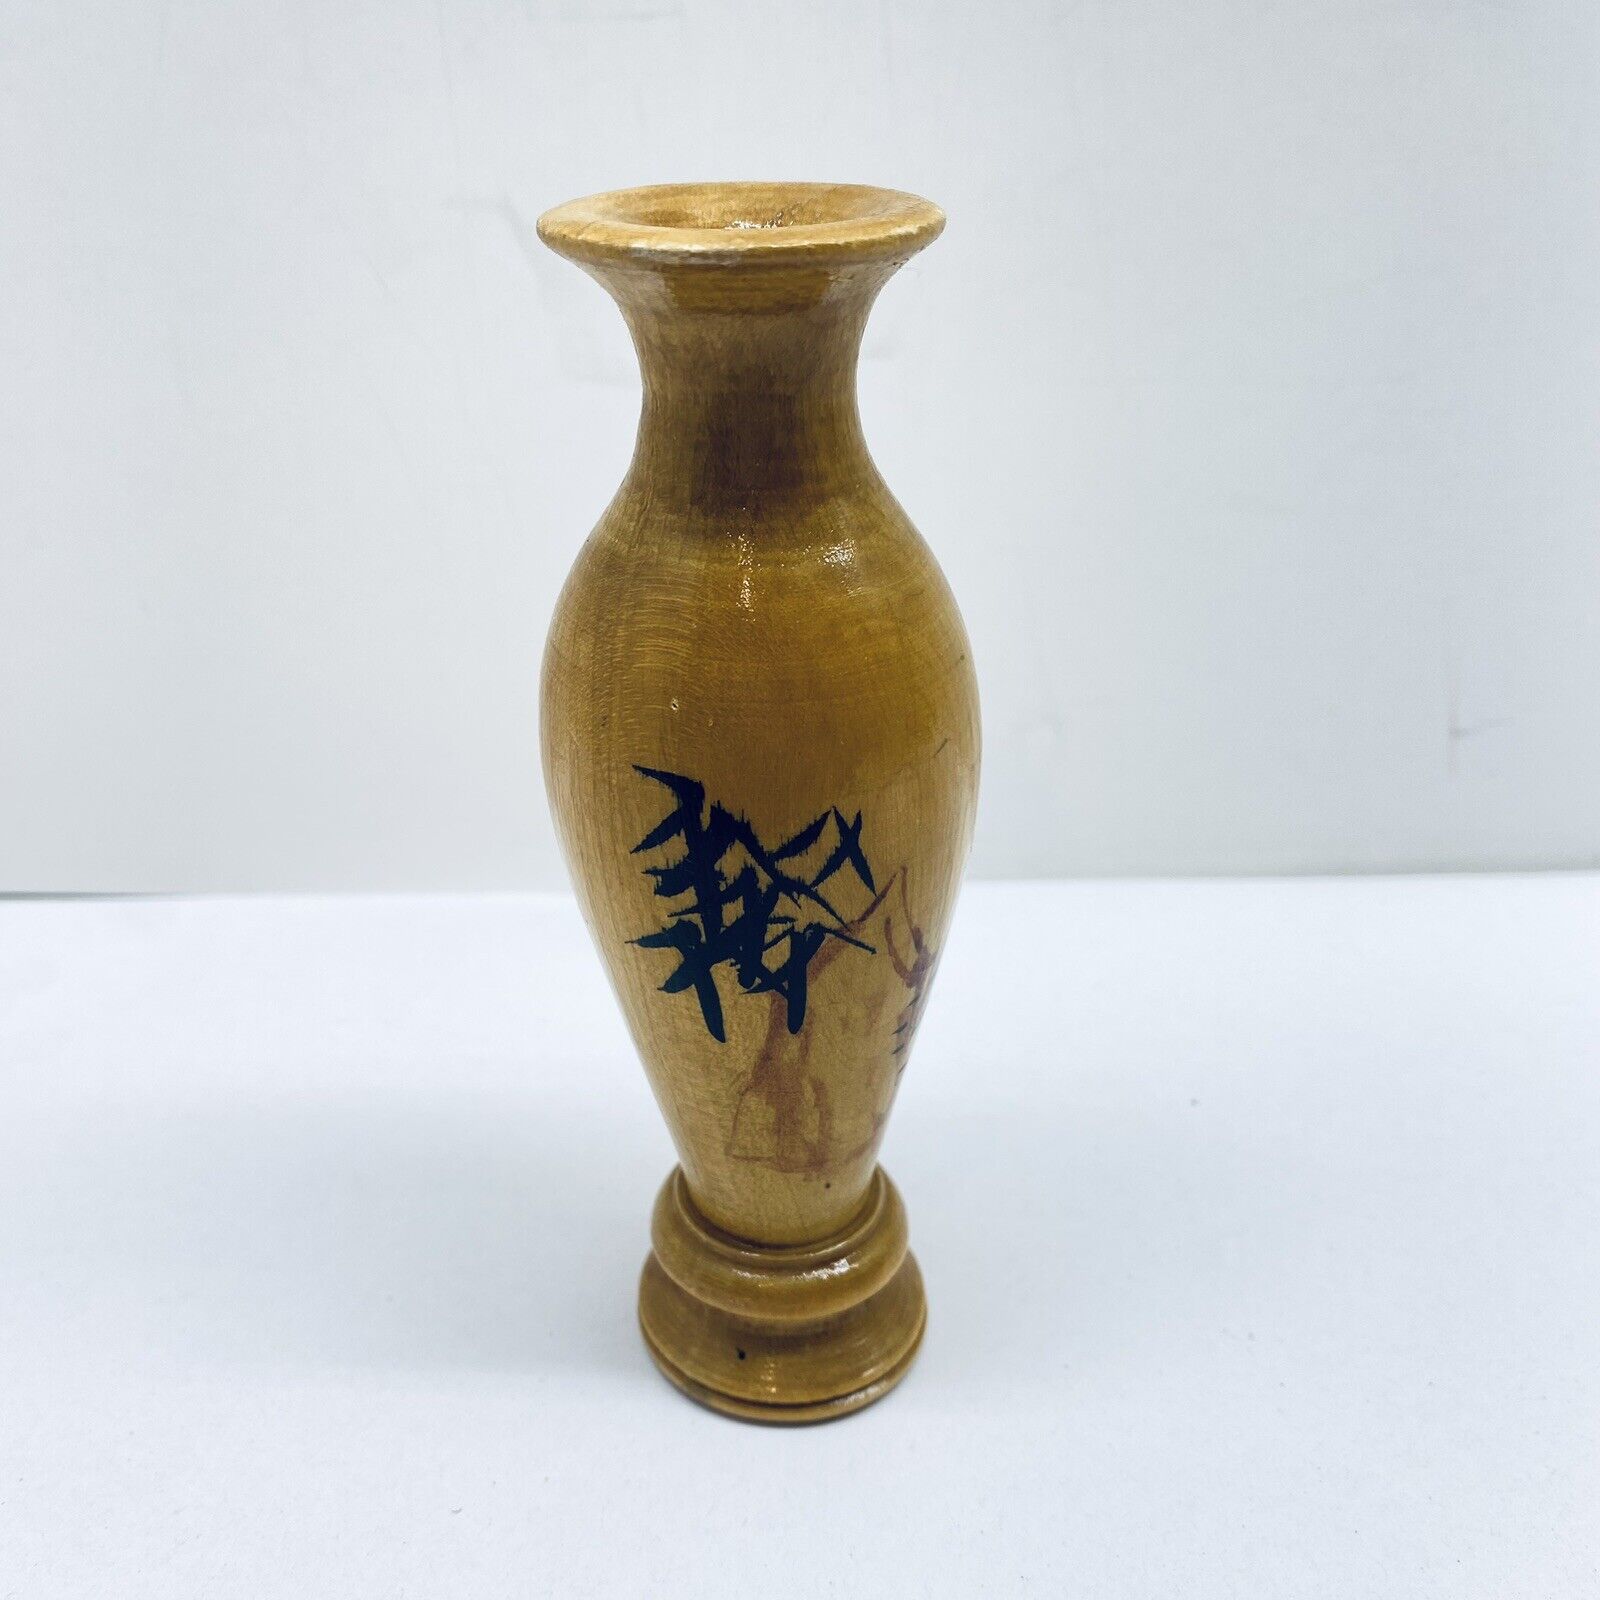 Vintage Japanese Wood Ornate Hand Carved Bud Vase Very Unique Design